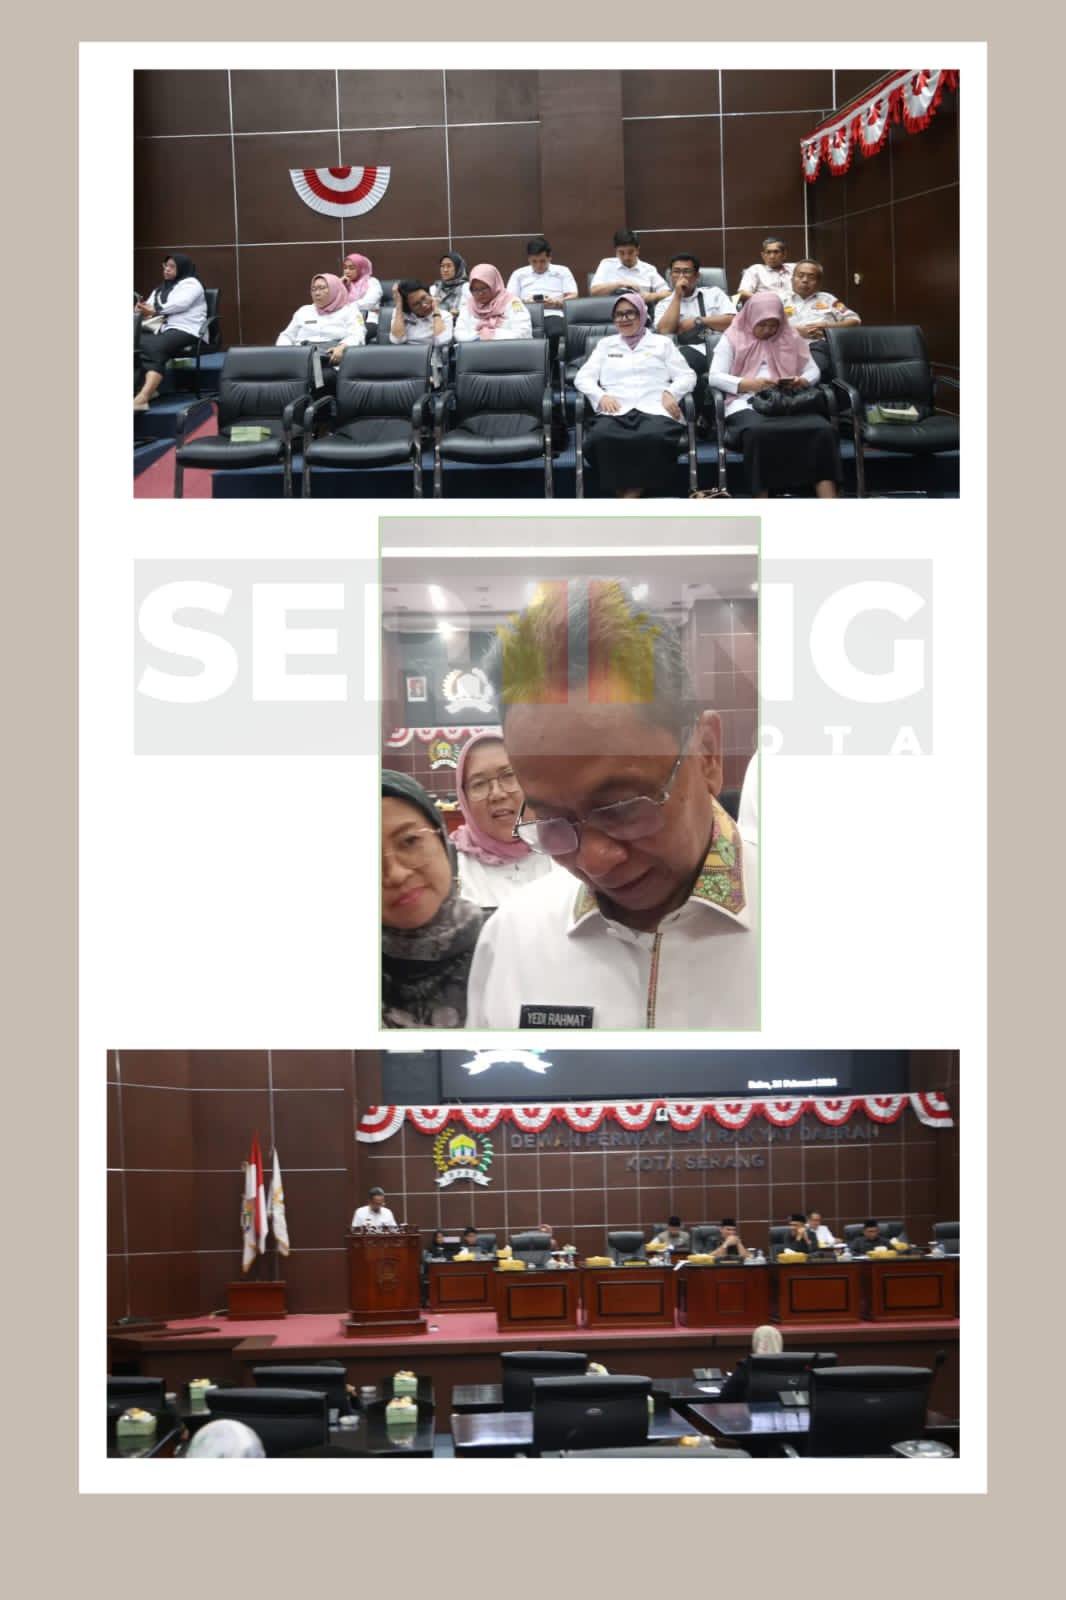 Pj Walikota Serang Hadiri Rapat Paripurna DPRD Kota Serang, Pj Walikota Serang: Bappeda Kota Serang akan Berganti Nama menjadi Bapprida Kota Serang